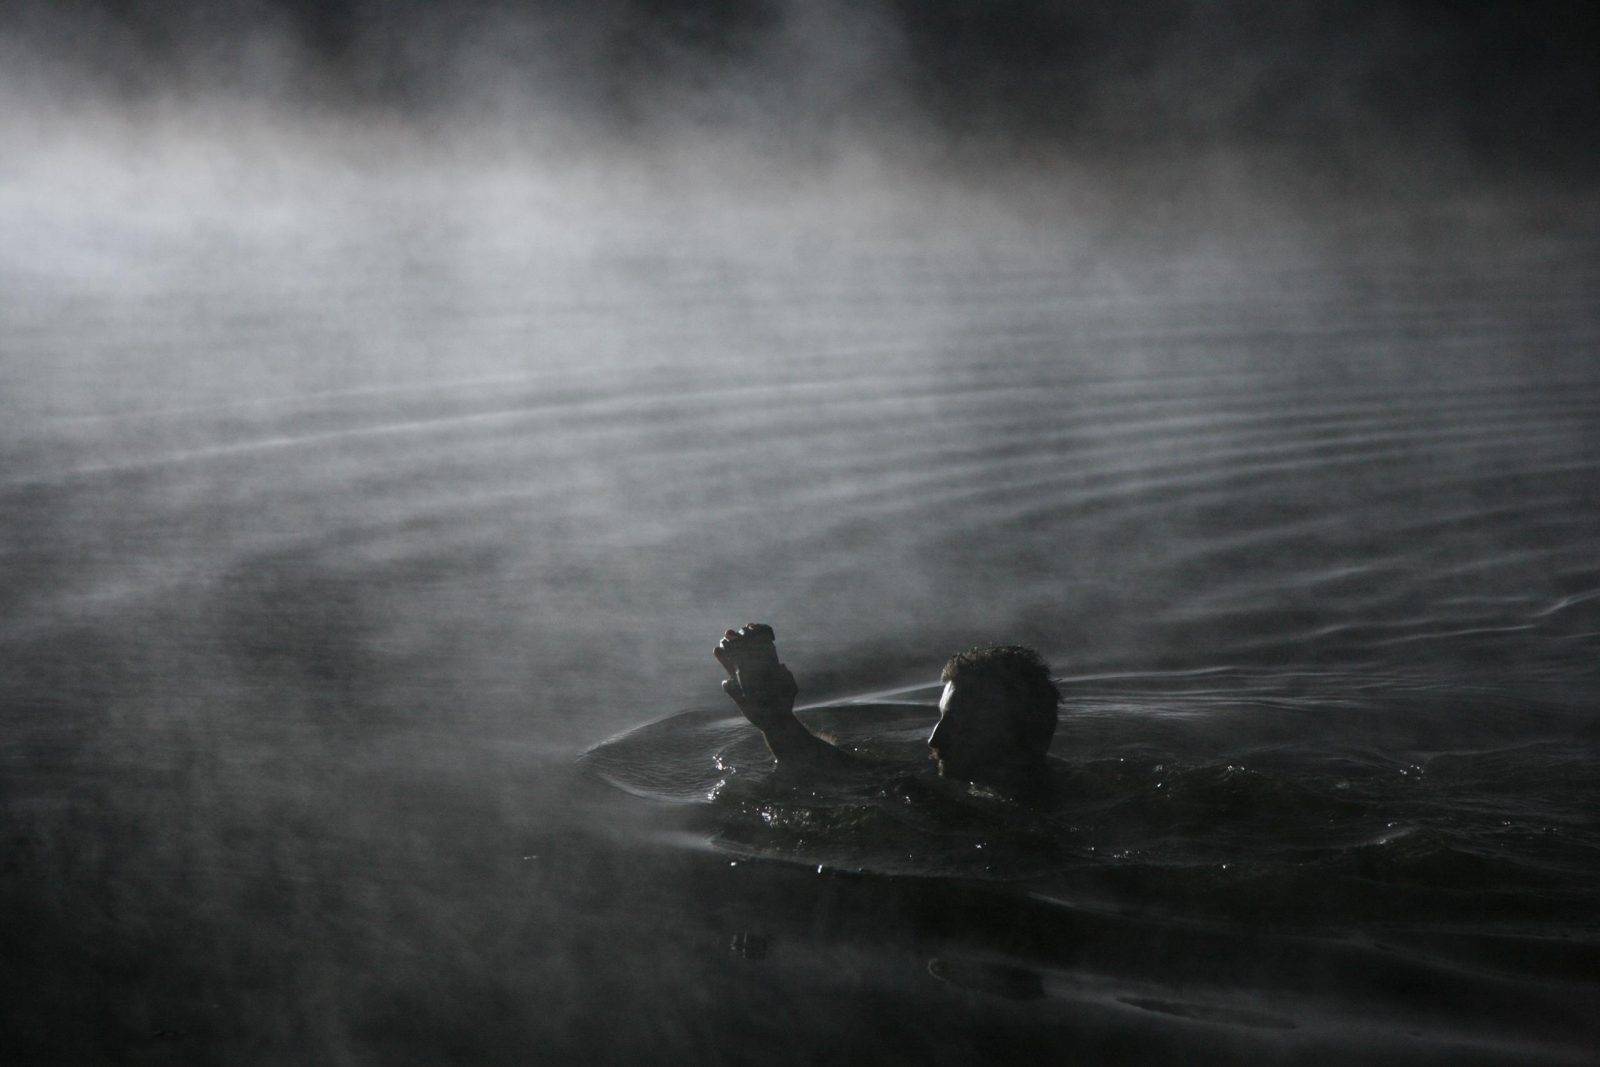 Hunter of Water Silence by Jan Kadlec